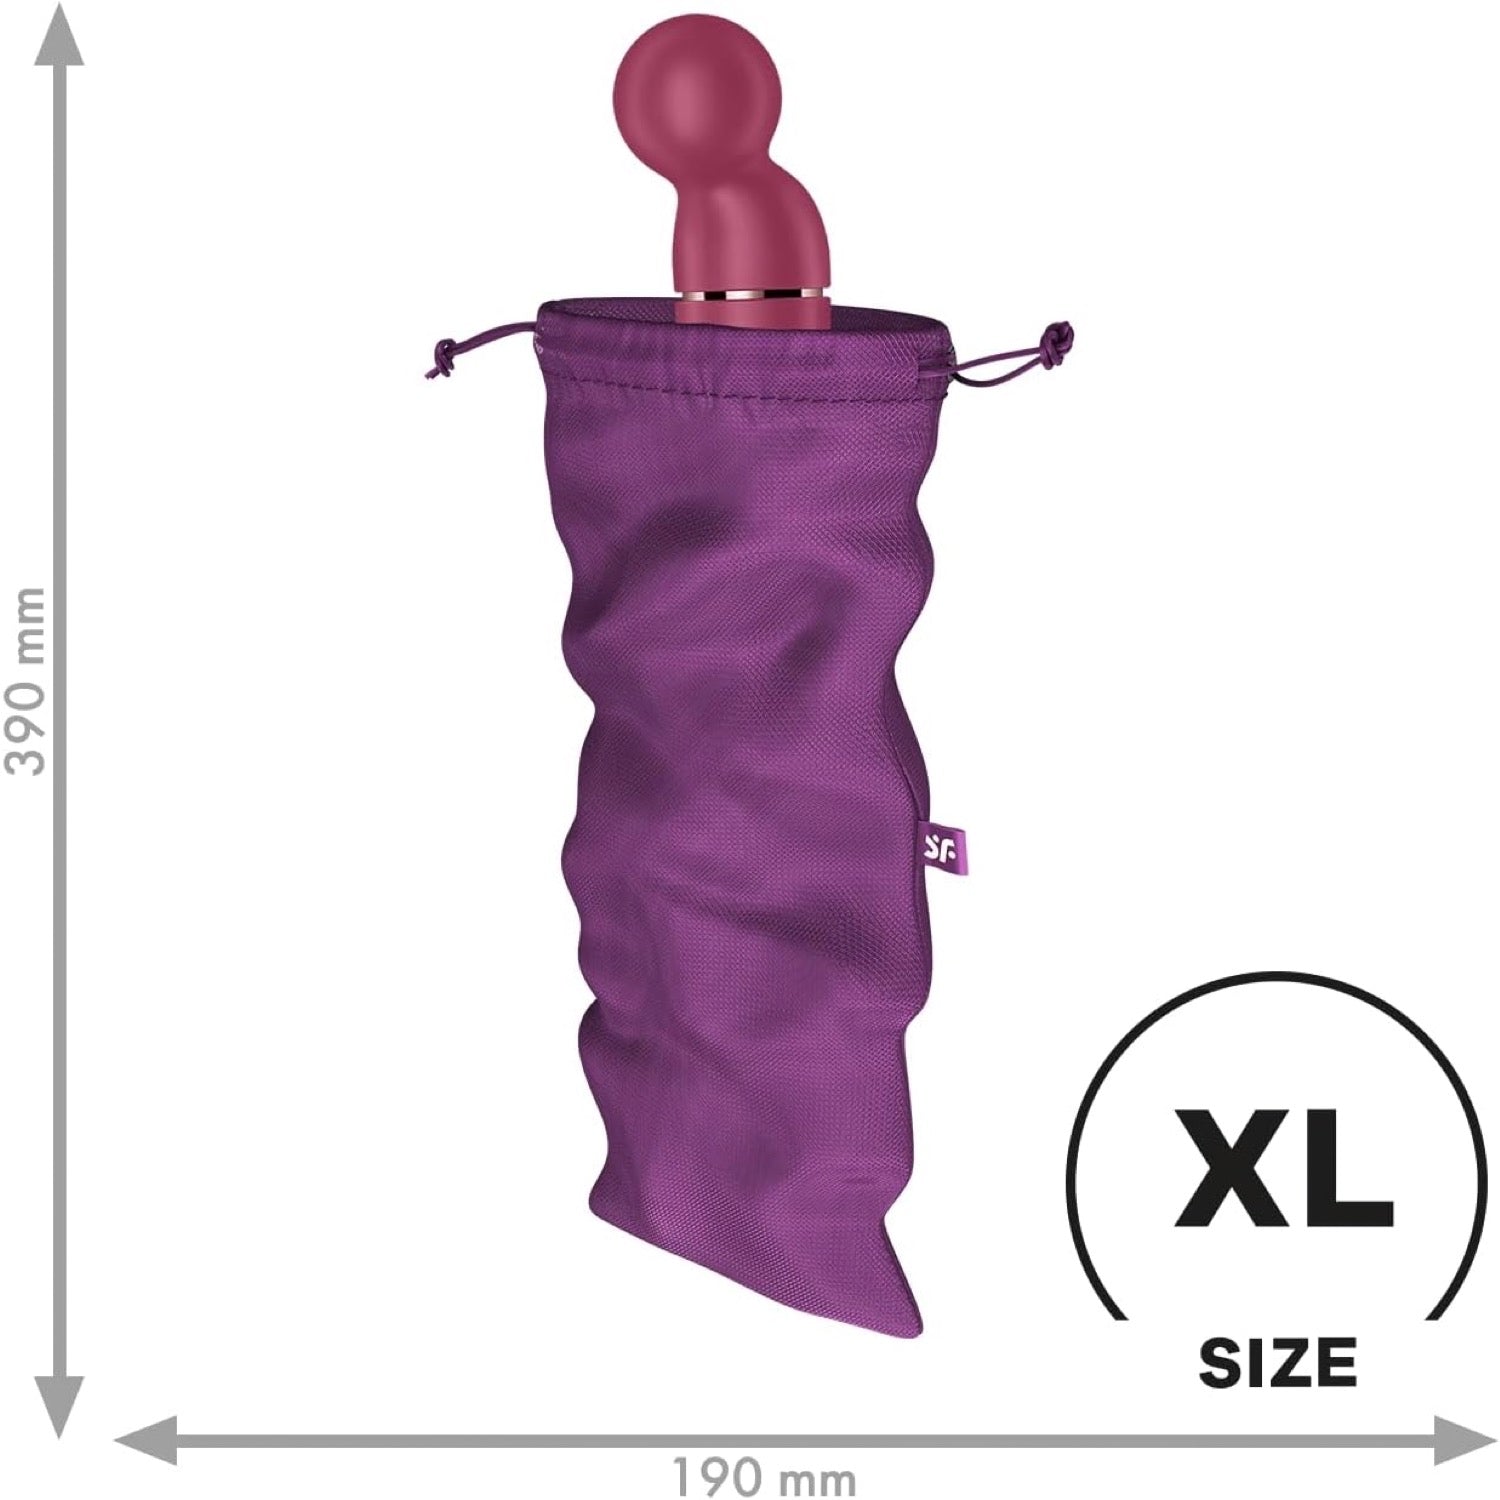 满意者 宝藏袋 XLarge - 紫罗兰色 - 紫色 by Satisfyer